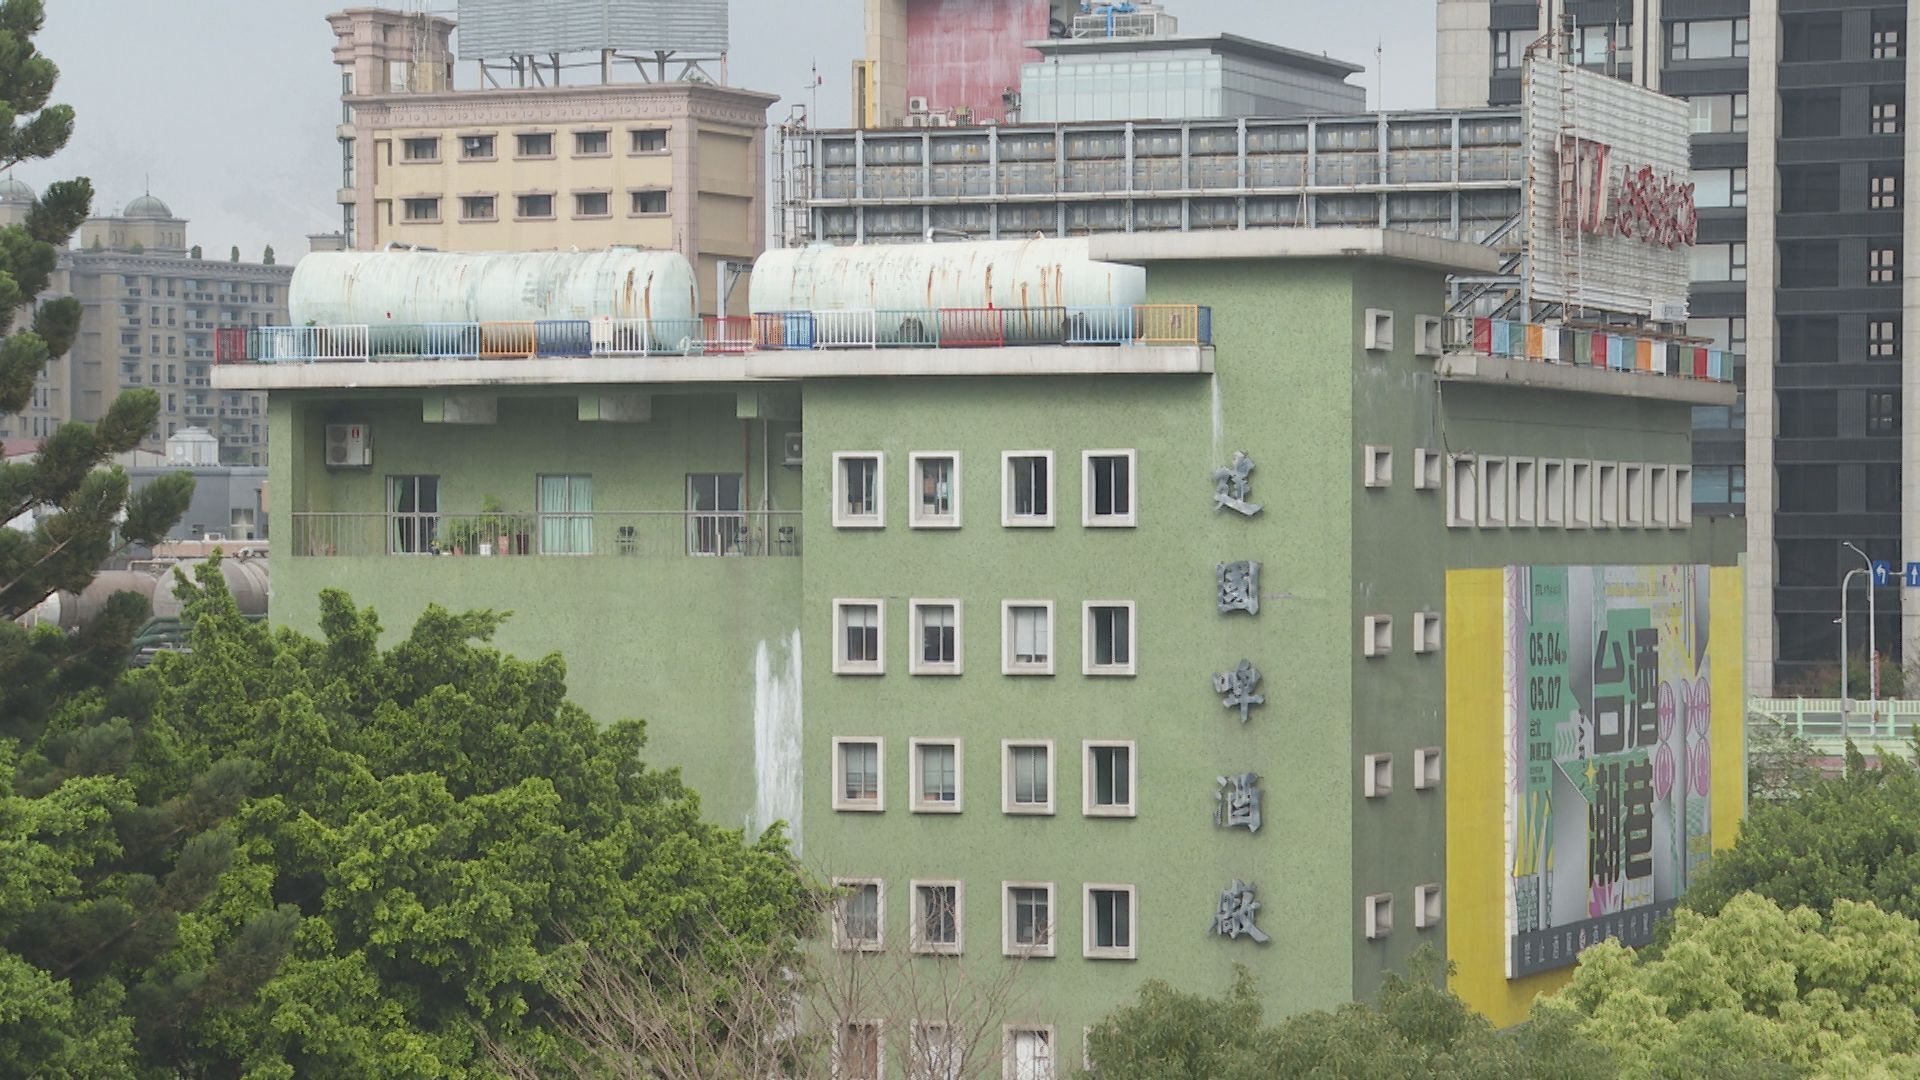 台北市市定古迹「建国啤酒厂」六年前原计划变更为文化园区，后决定变更为台北科技大学用地。记者董子诚／摄影